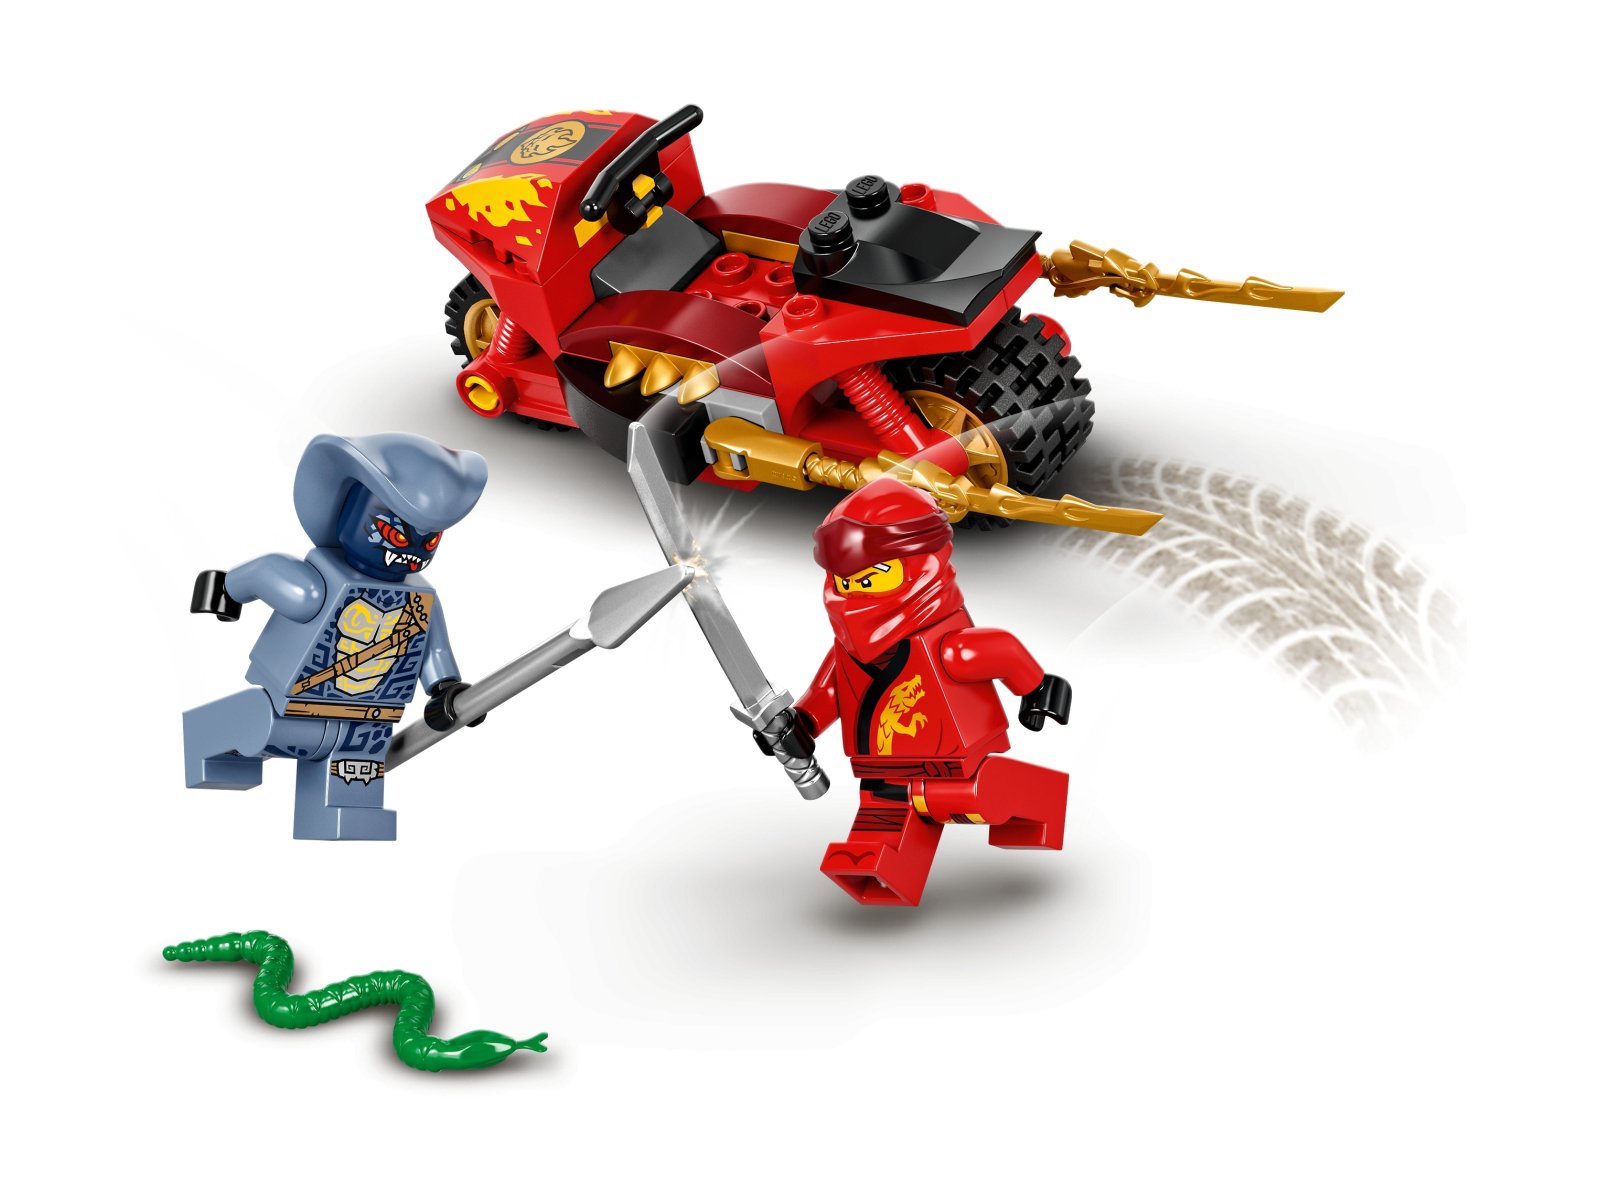 LEGO Ninjago 71734 Motocykl Kaia